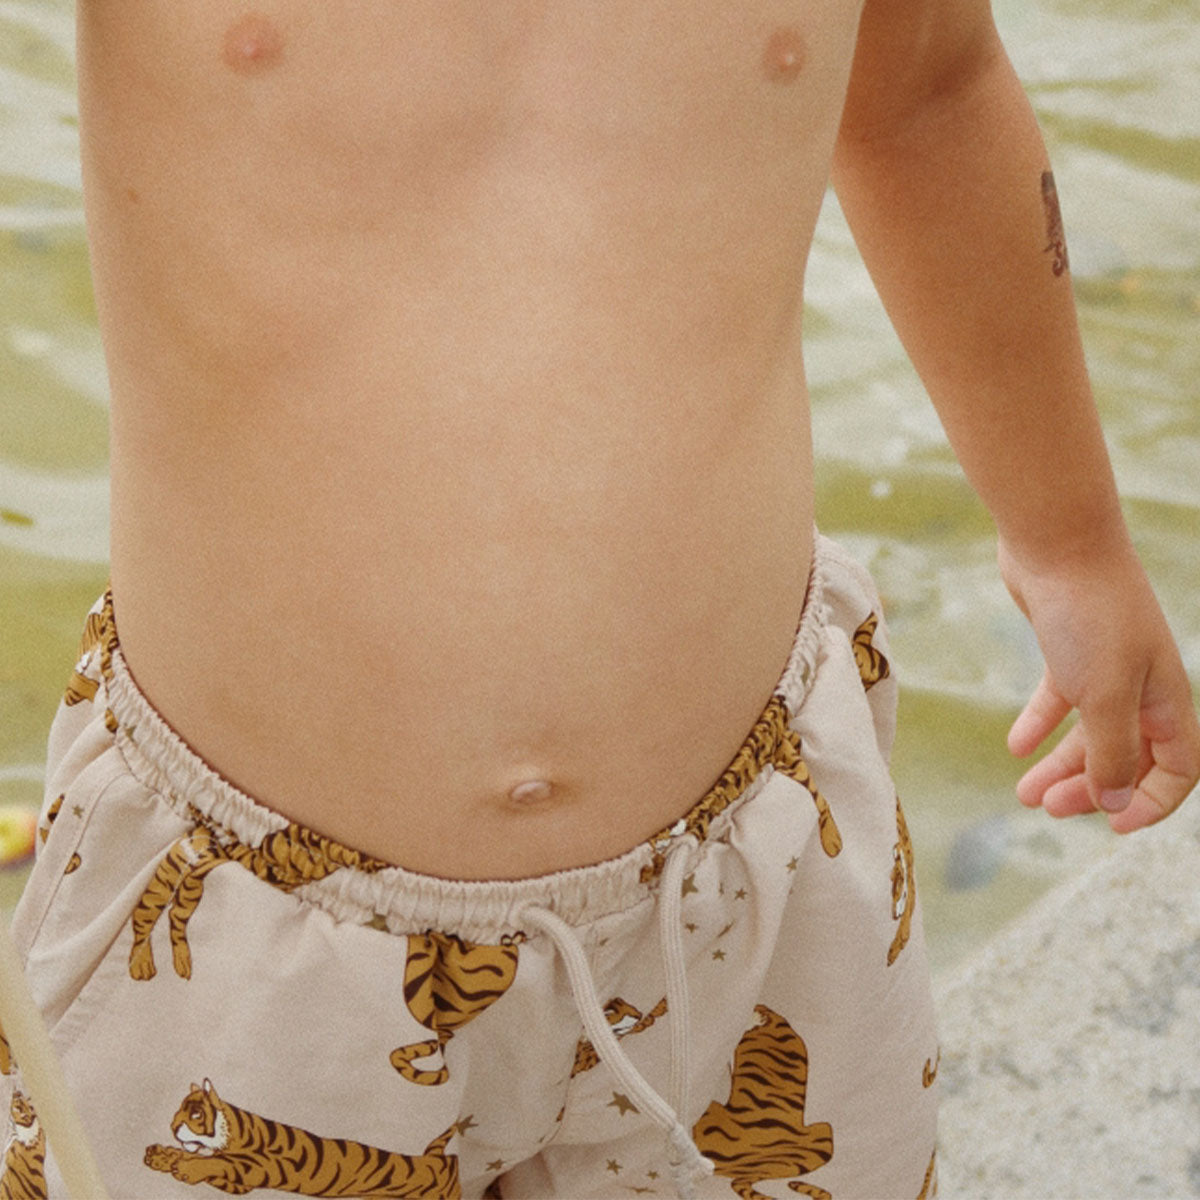 Je zoontje is helemaal klaar voor de zomer met deze leuke Konges Slojd asnou zwembroek tiger. De fijne zwembroek zit heerlijk, heeft handige touwtjes om hem helemaal passend te maken om het lichaam van je kindje én ziet er superleuk uit! VanZus